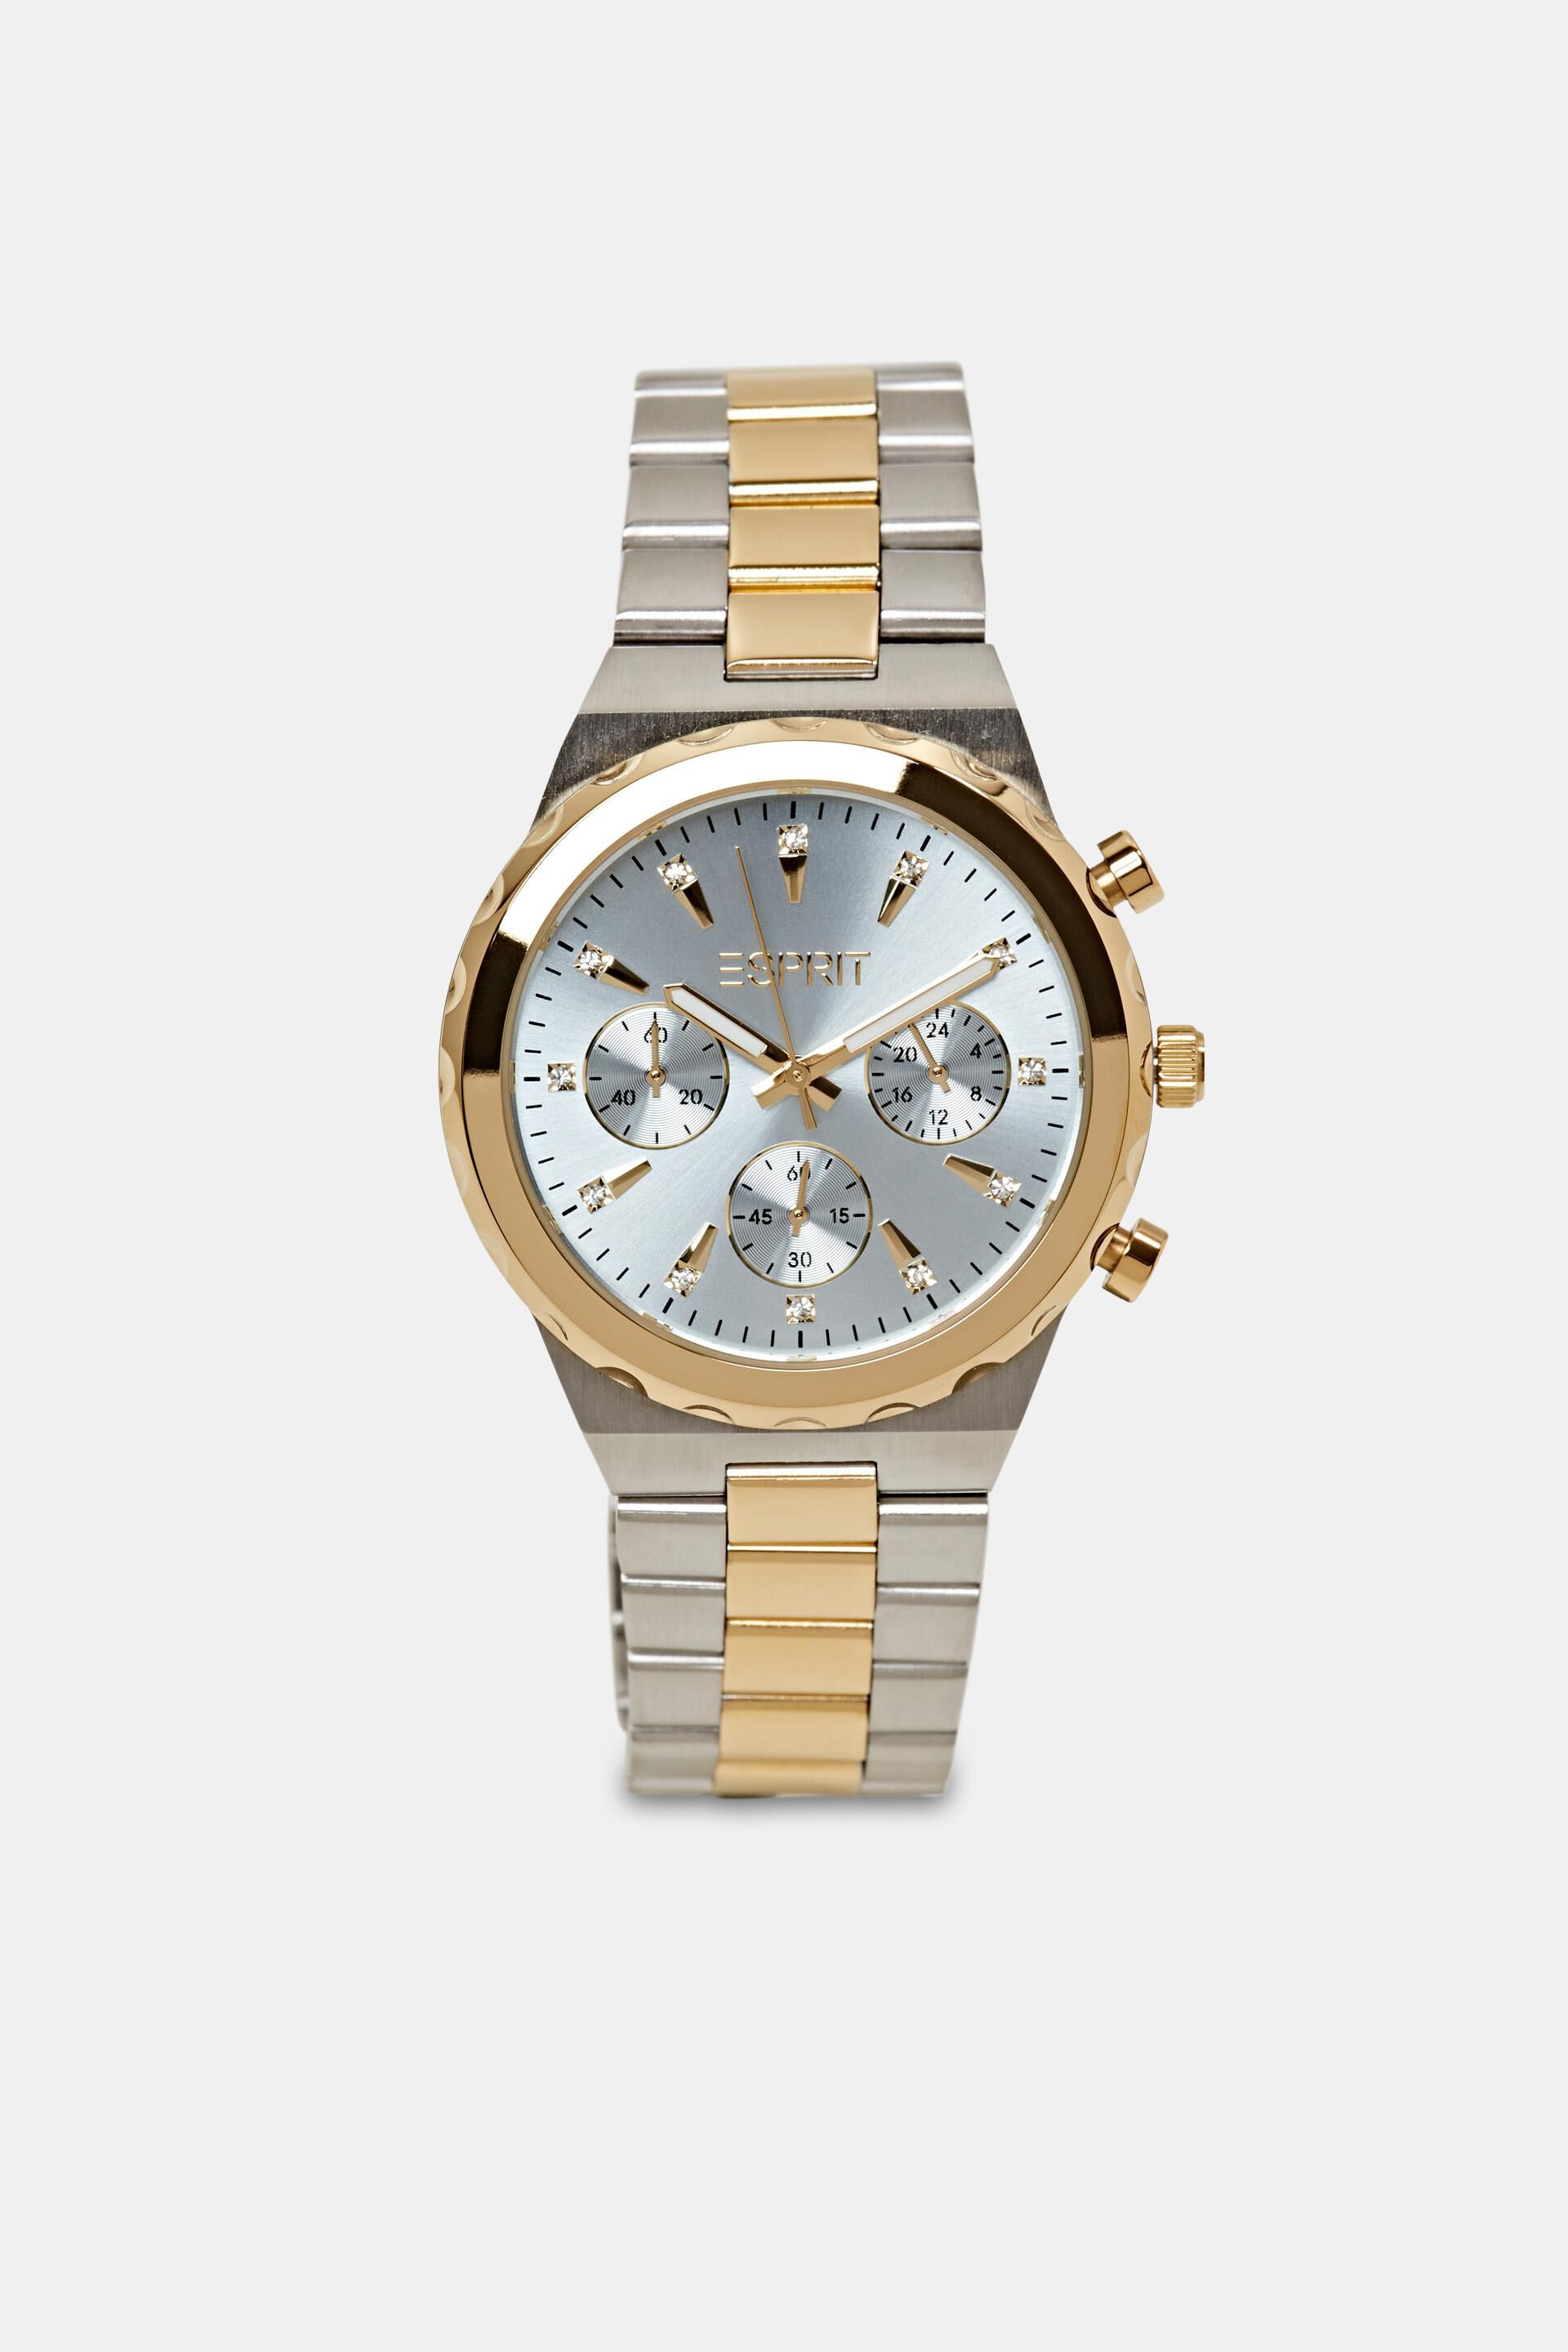 Esprit Online Store Multi-functional watch with zirconia